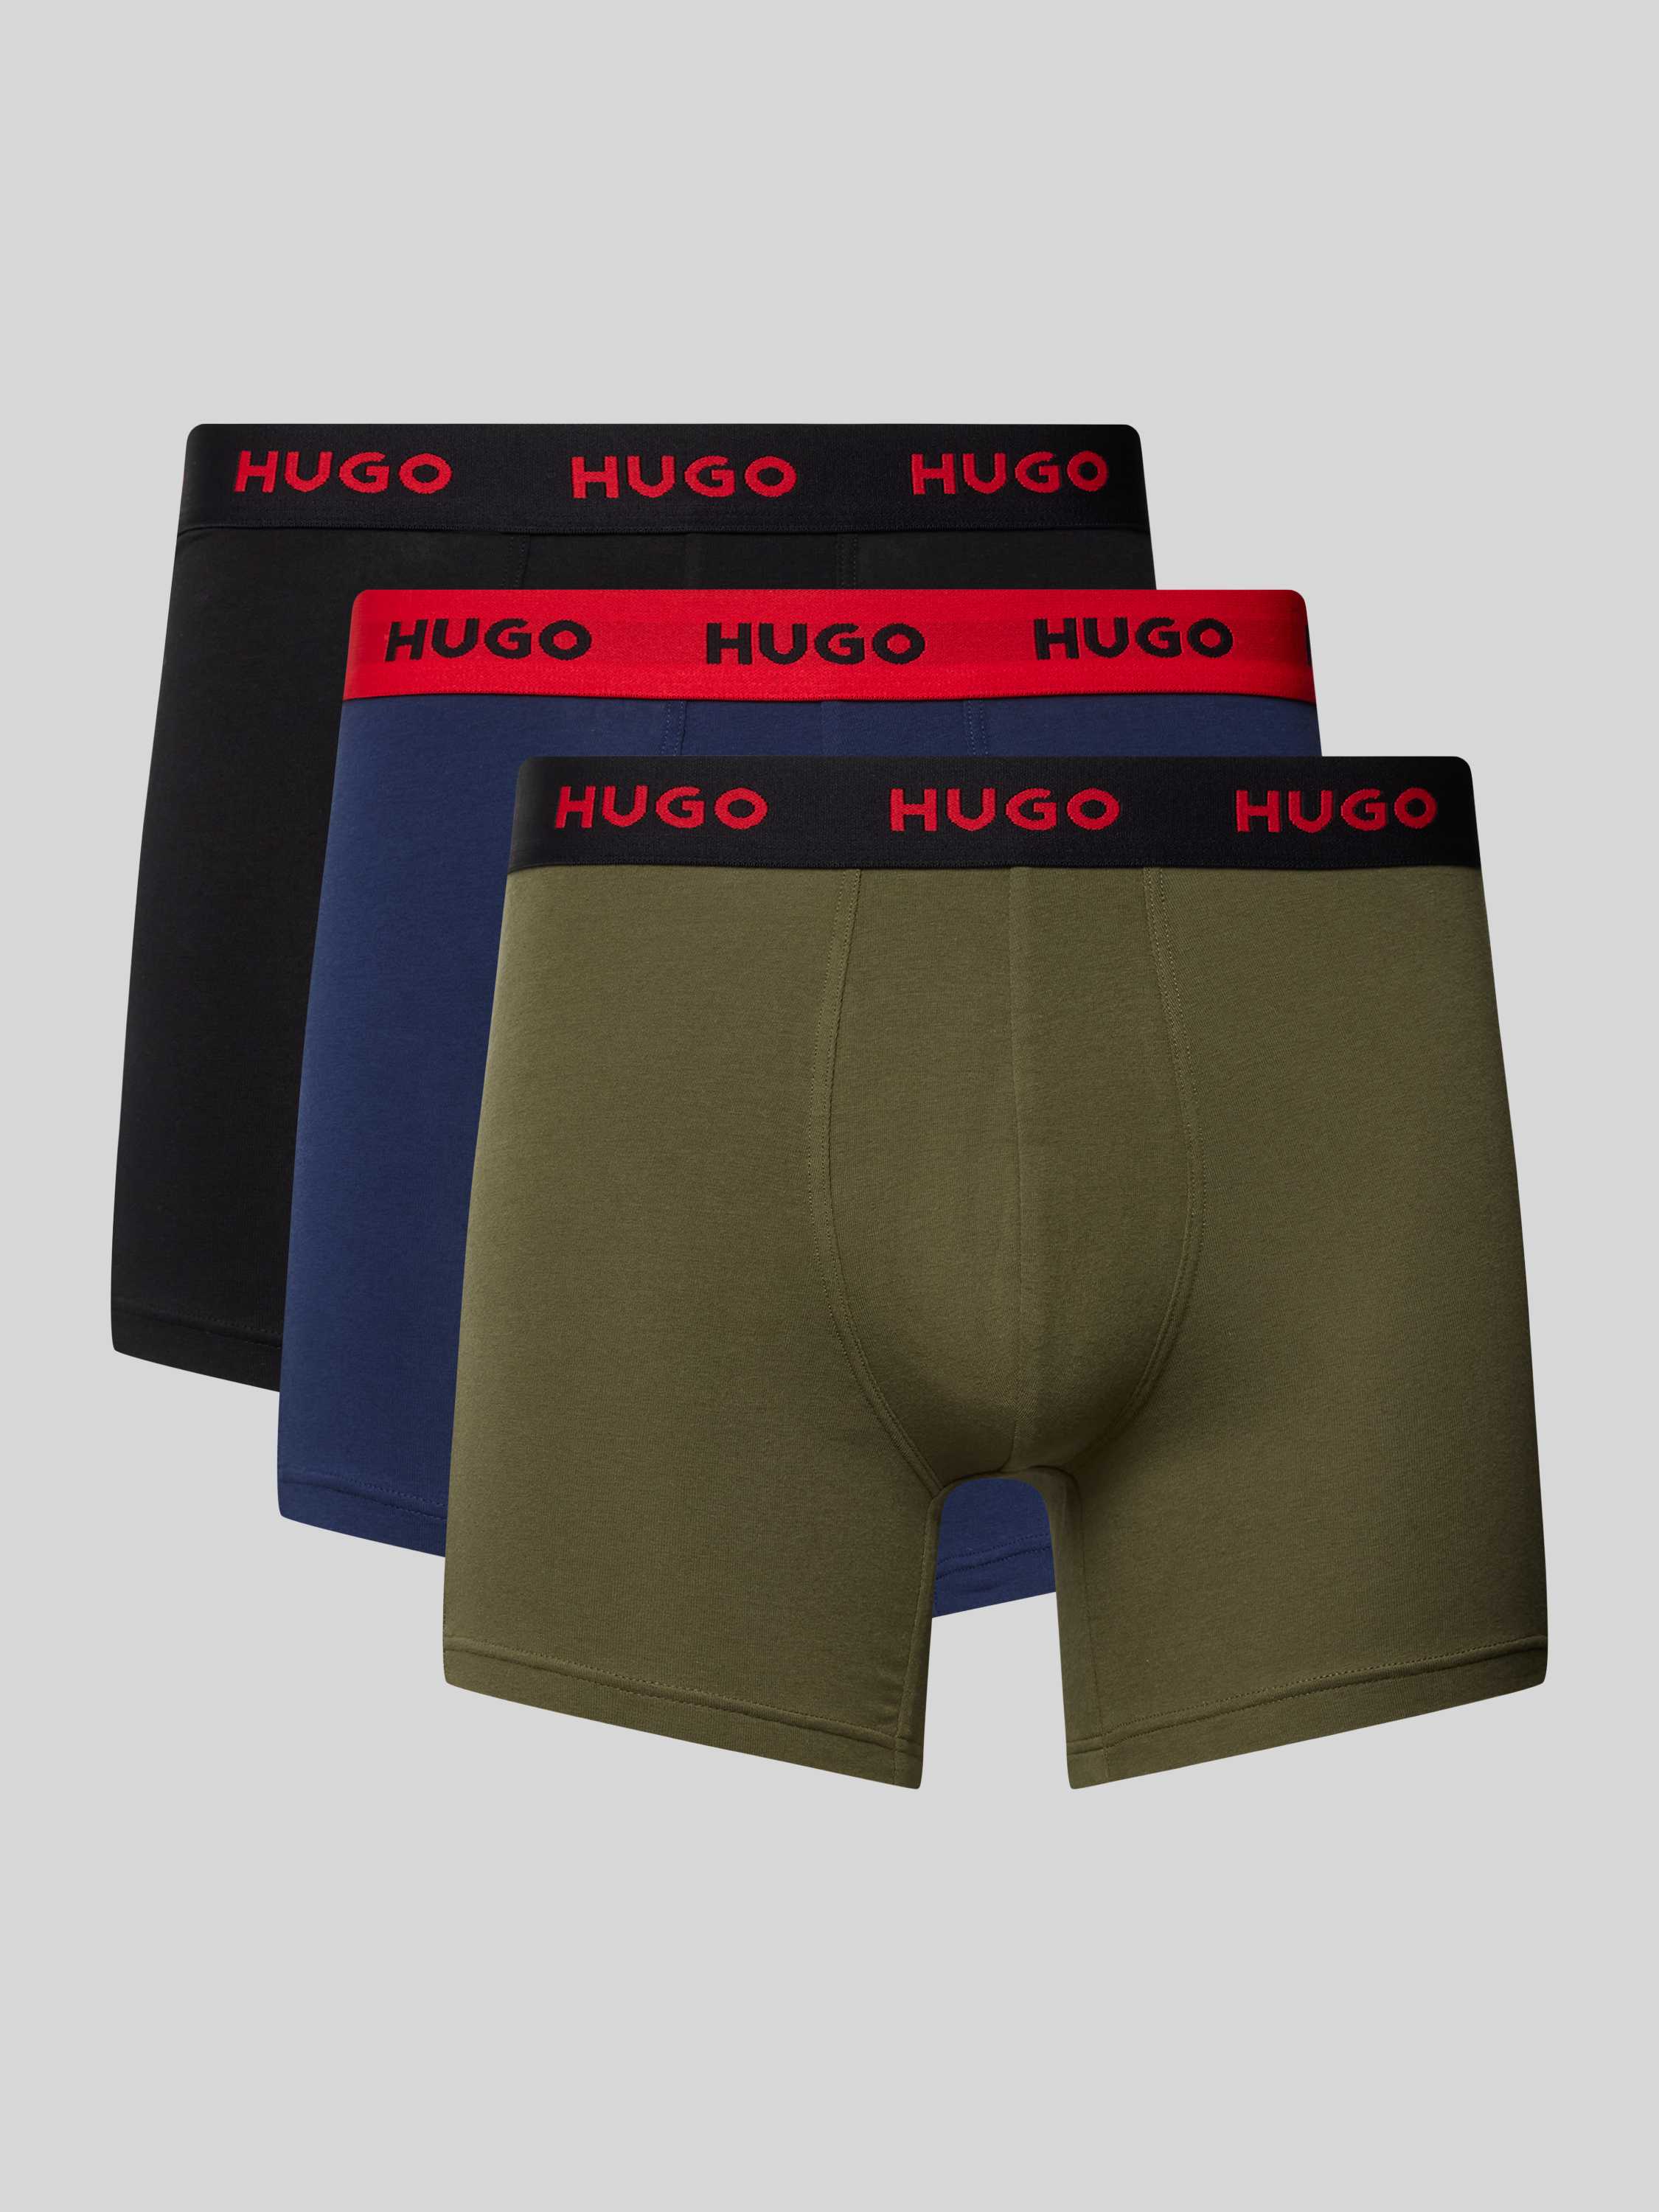 HUGO Boxershort met elastische band met logo in een set van 3 stuks